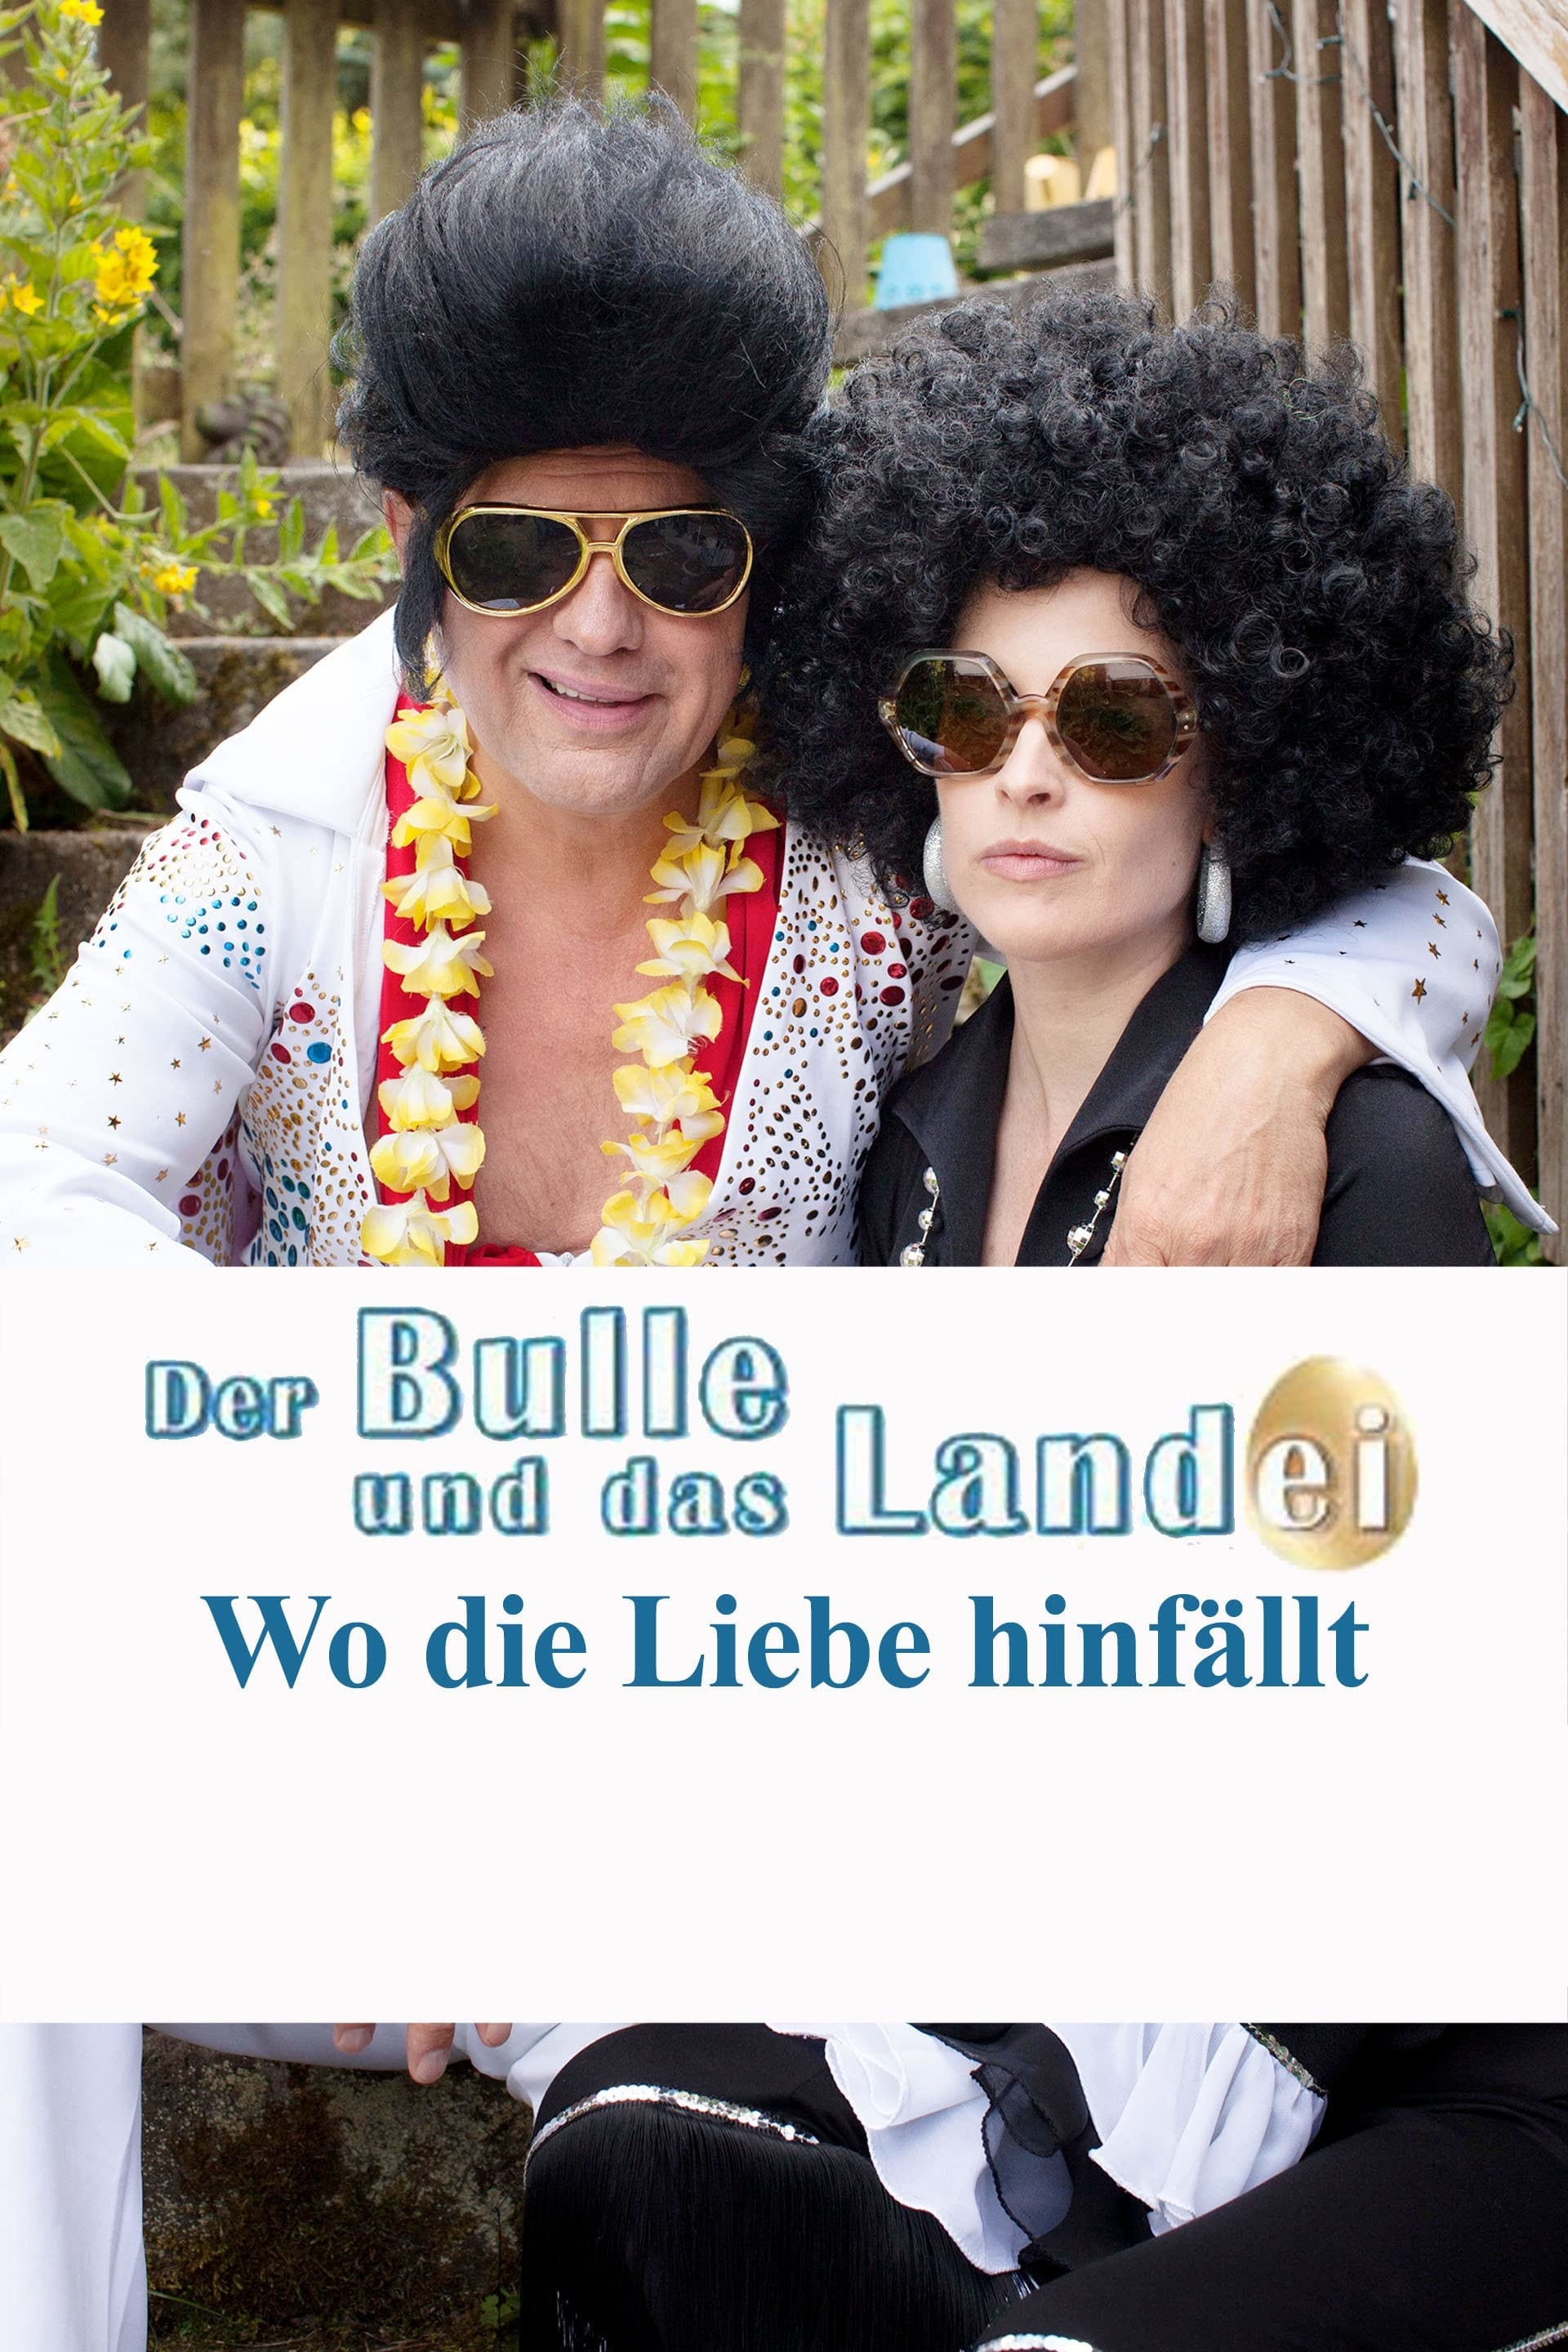 Der Bulle und das Landei - Wo die Liebe hinfällt (2015)